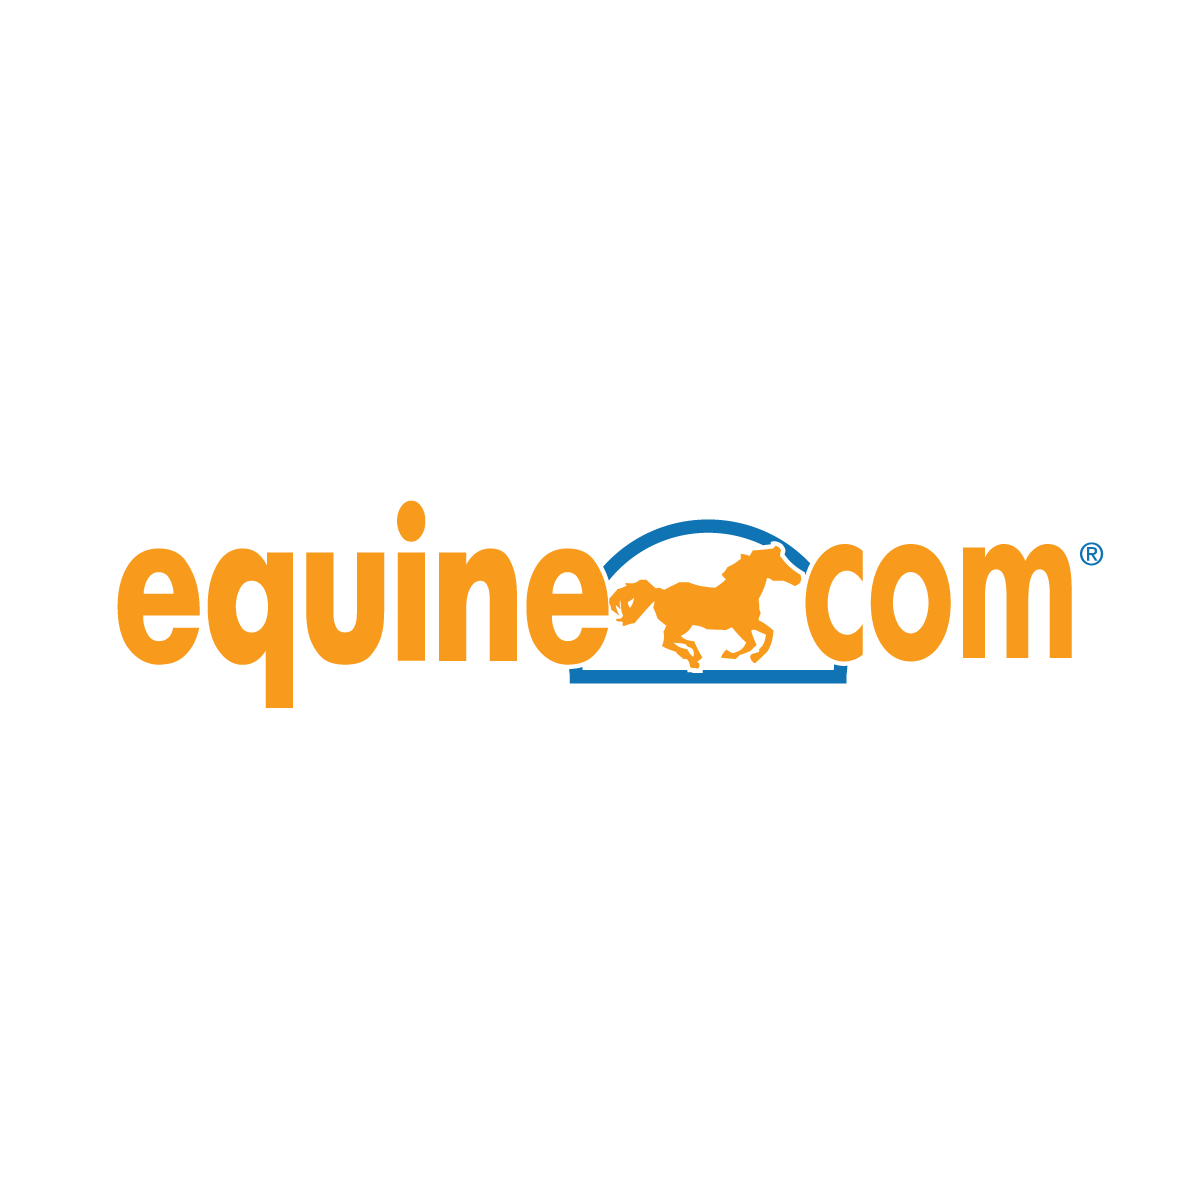 EquineDotCom_1200x1200-primary